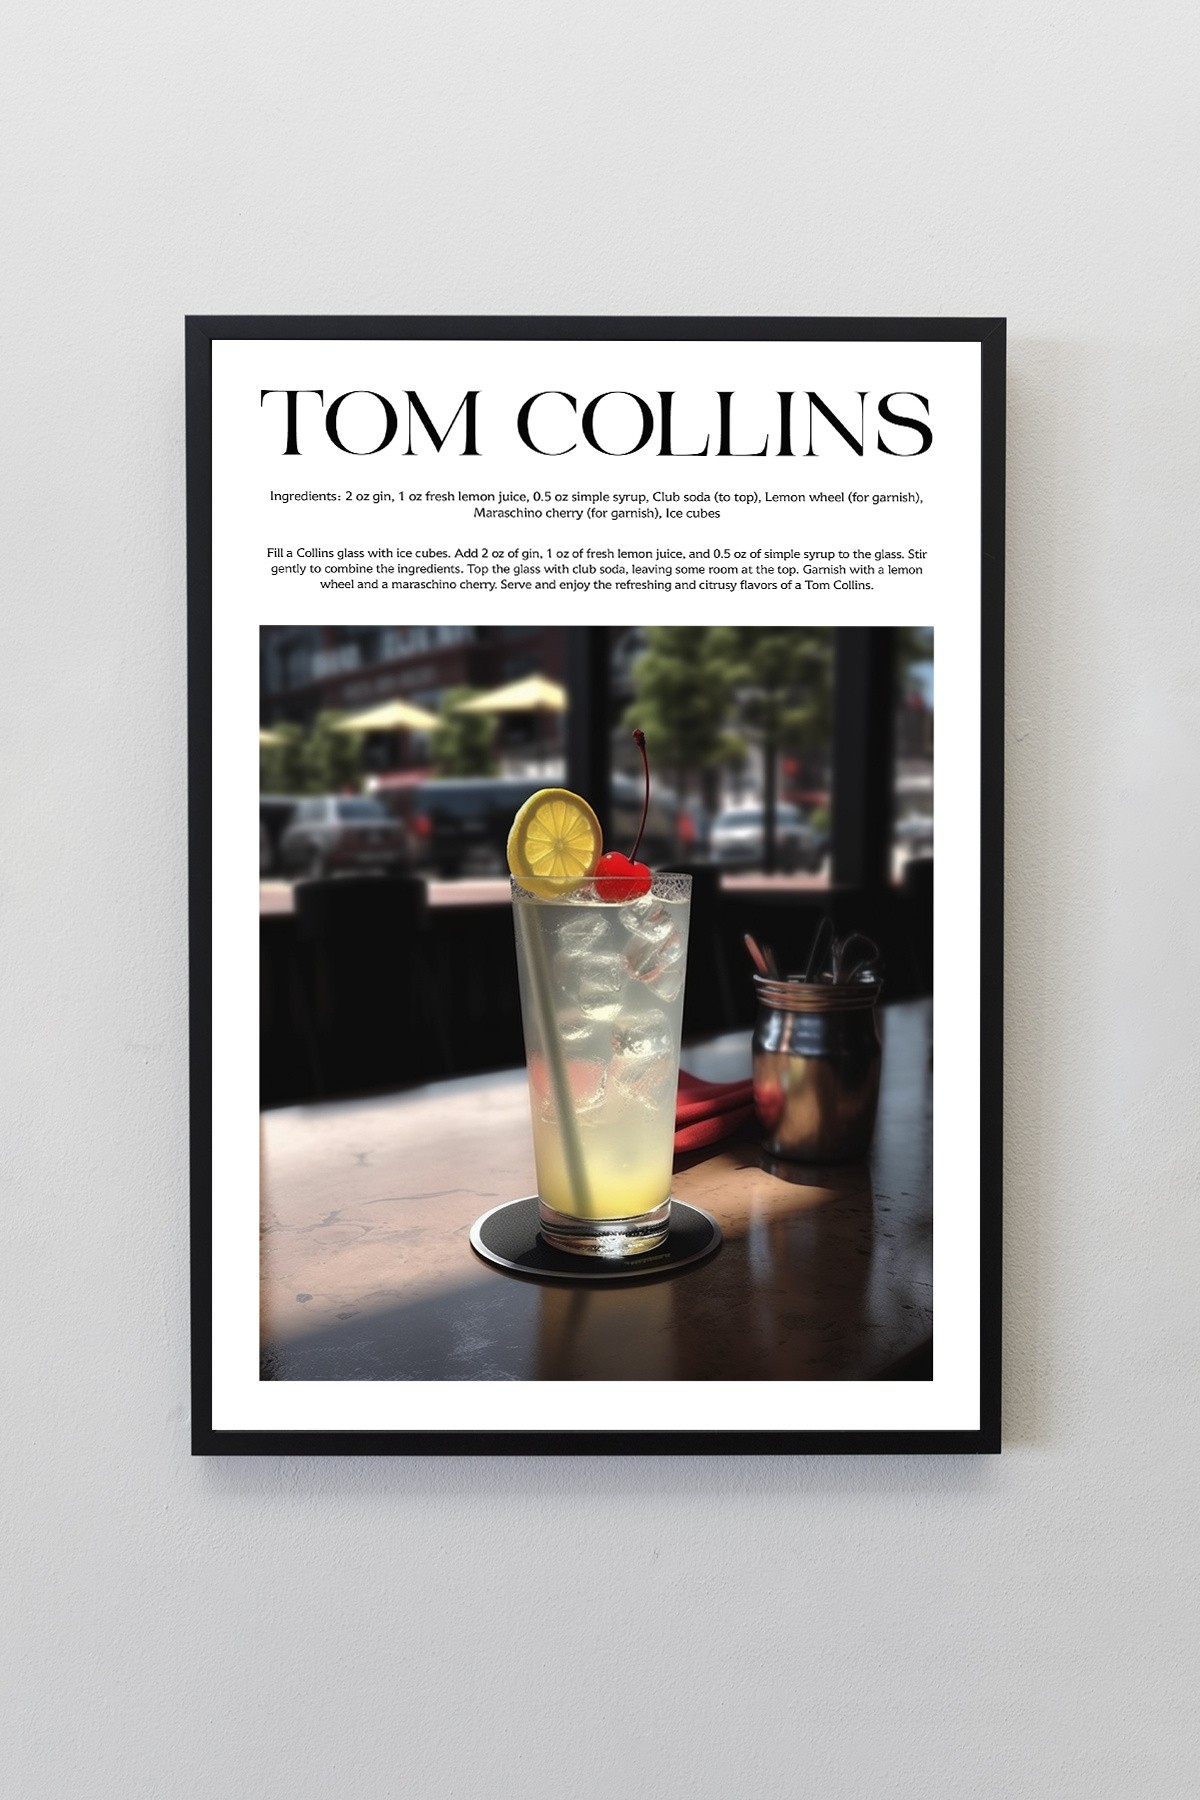 Tom Collins Kokteyl Tarifleri Tasarımlı Çerçeveli Poster Tablo